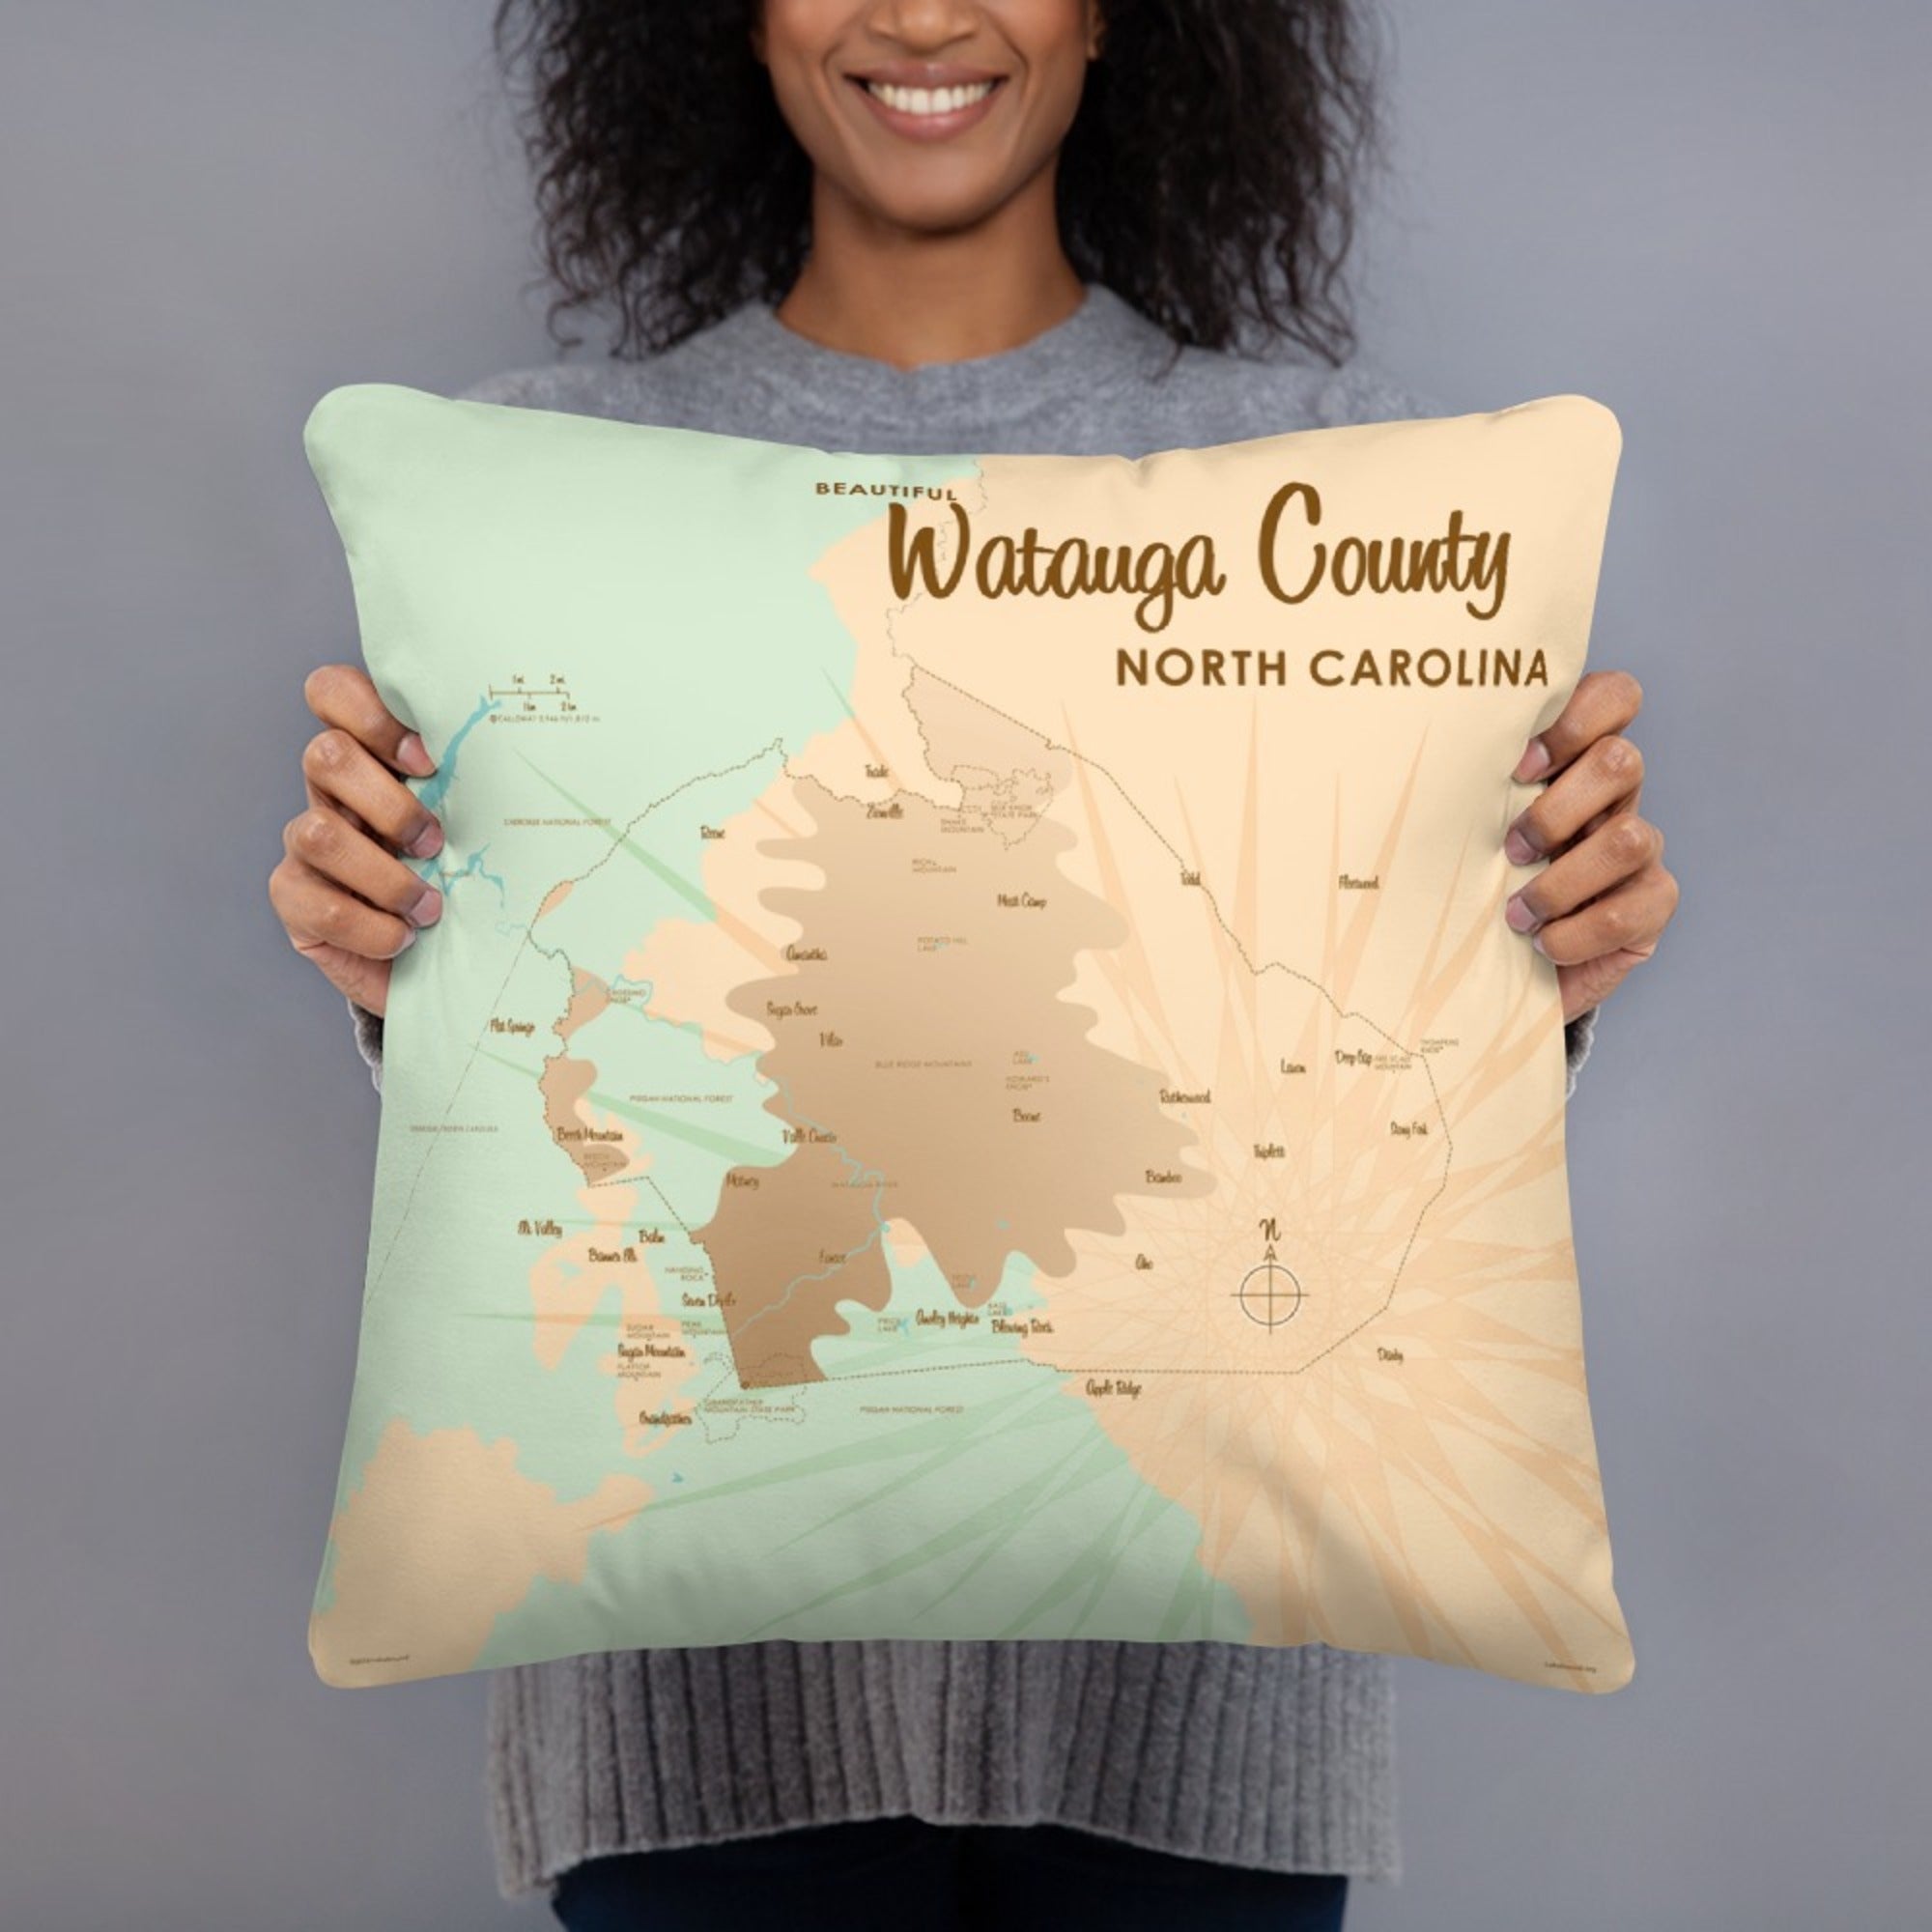 Watauga County North Carolina Pillow